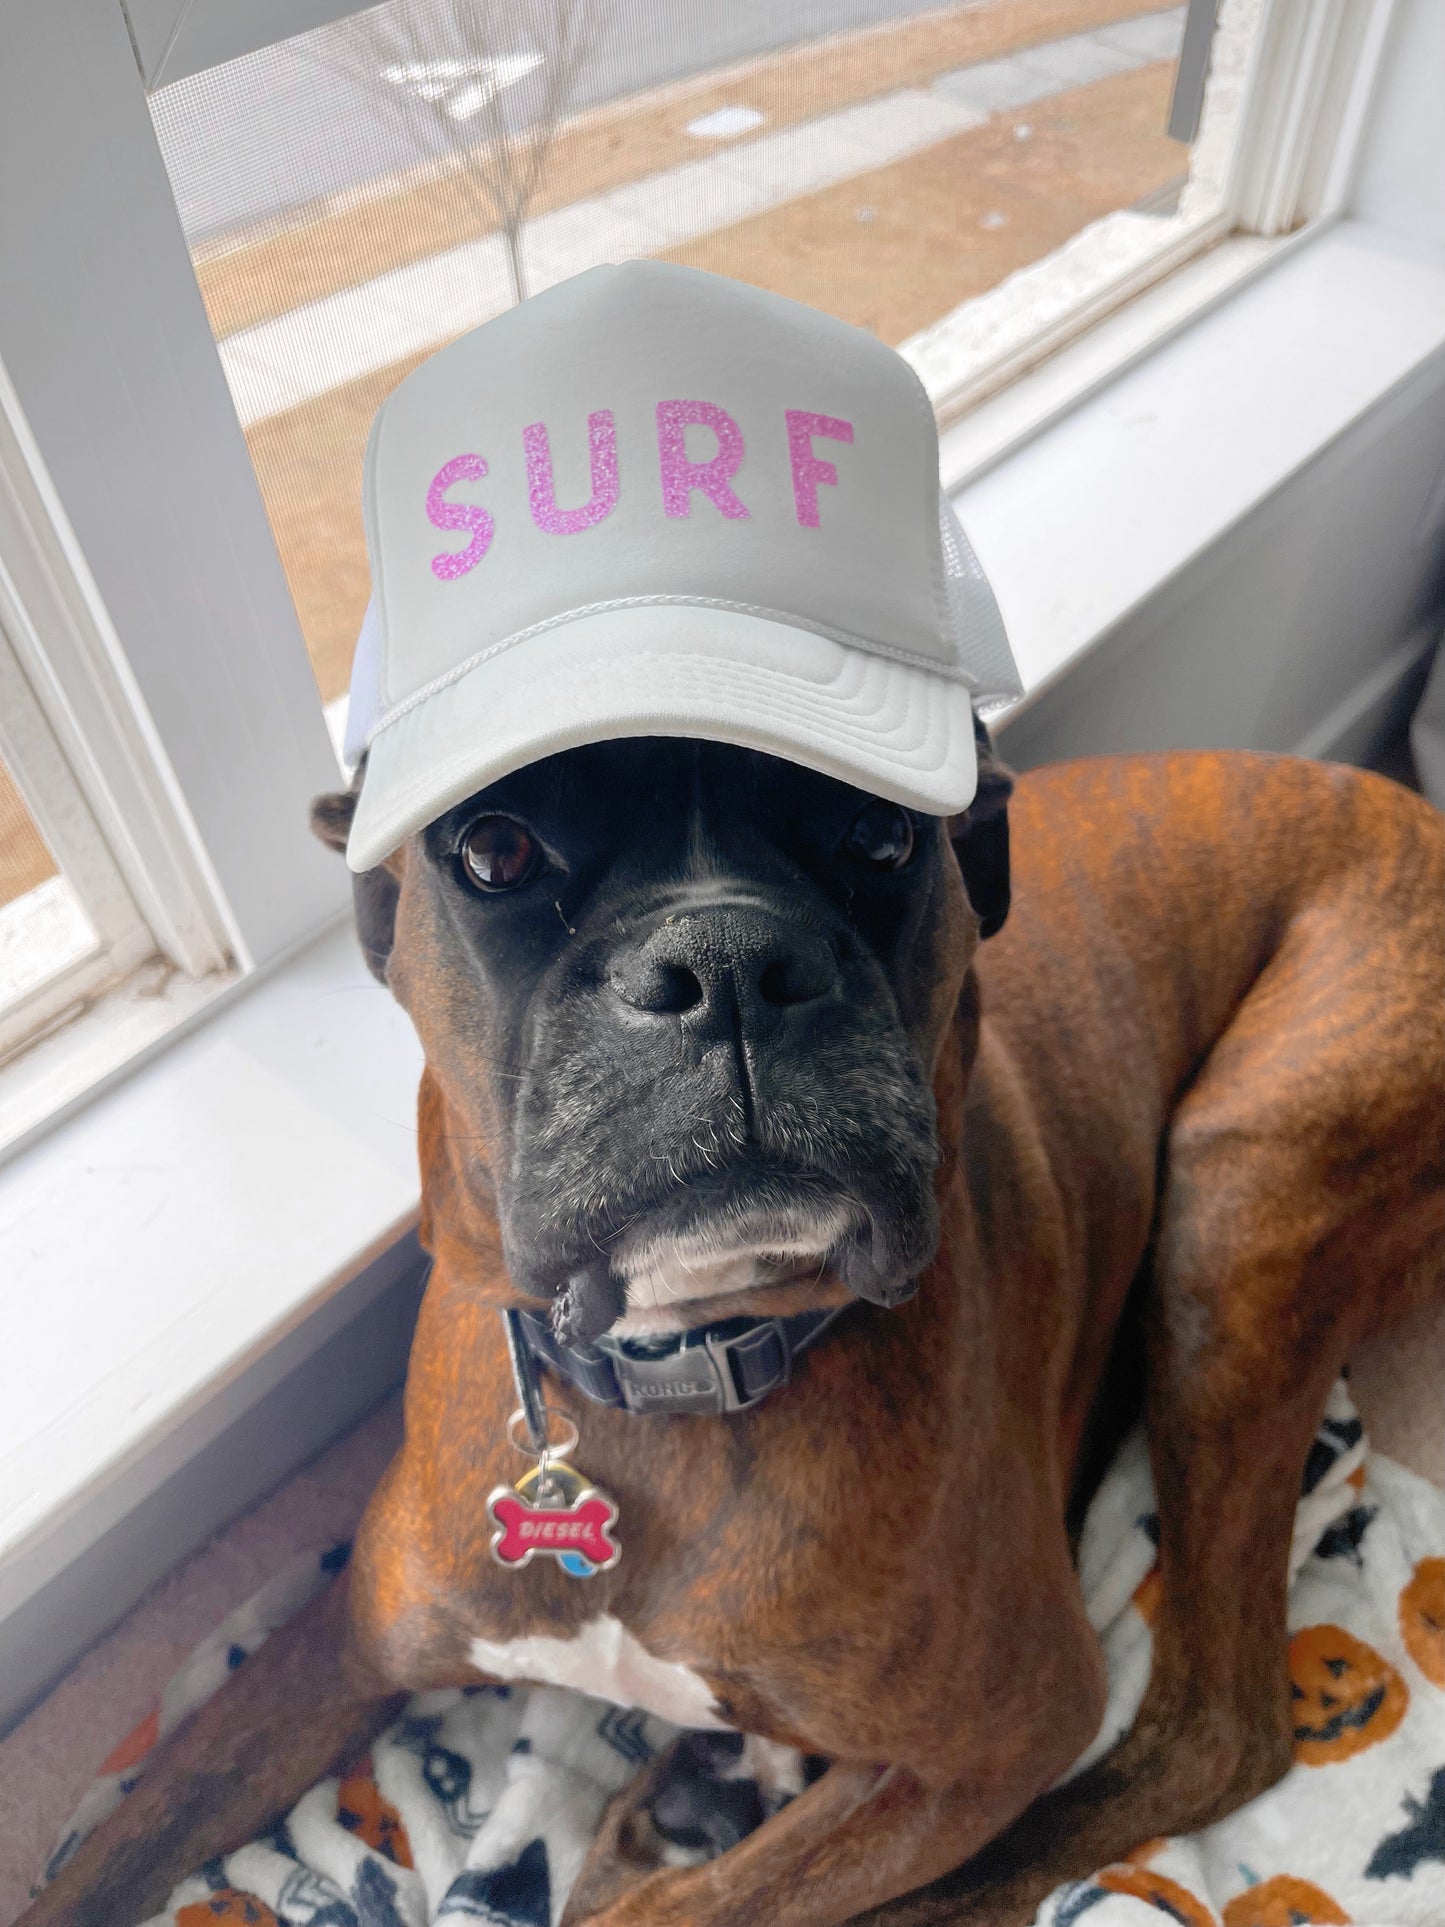 Surf Trucker Hat